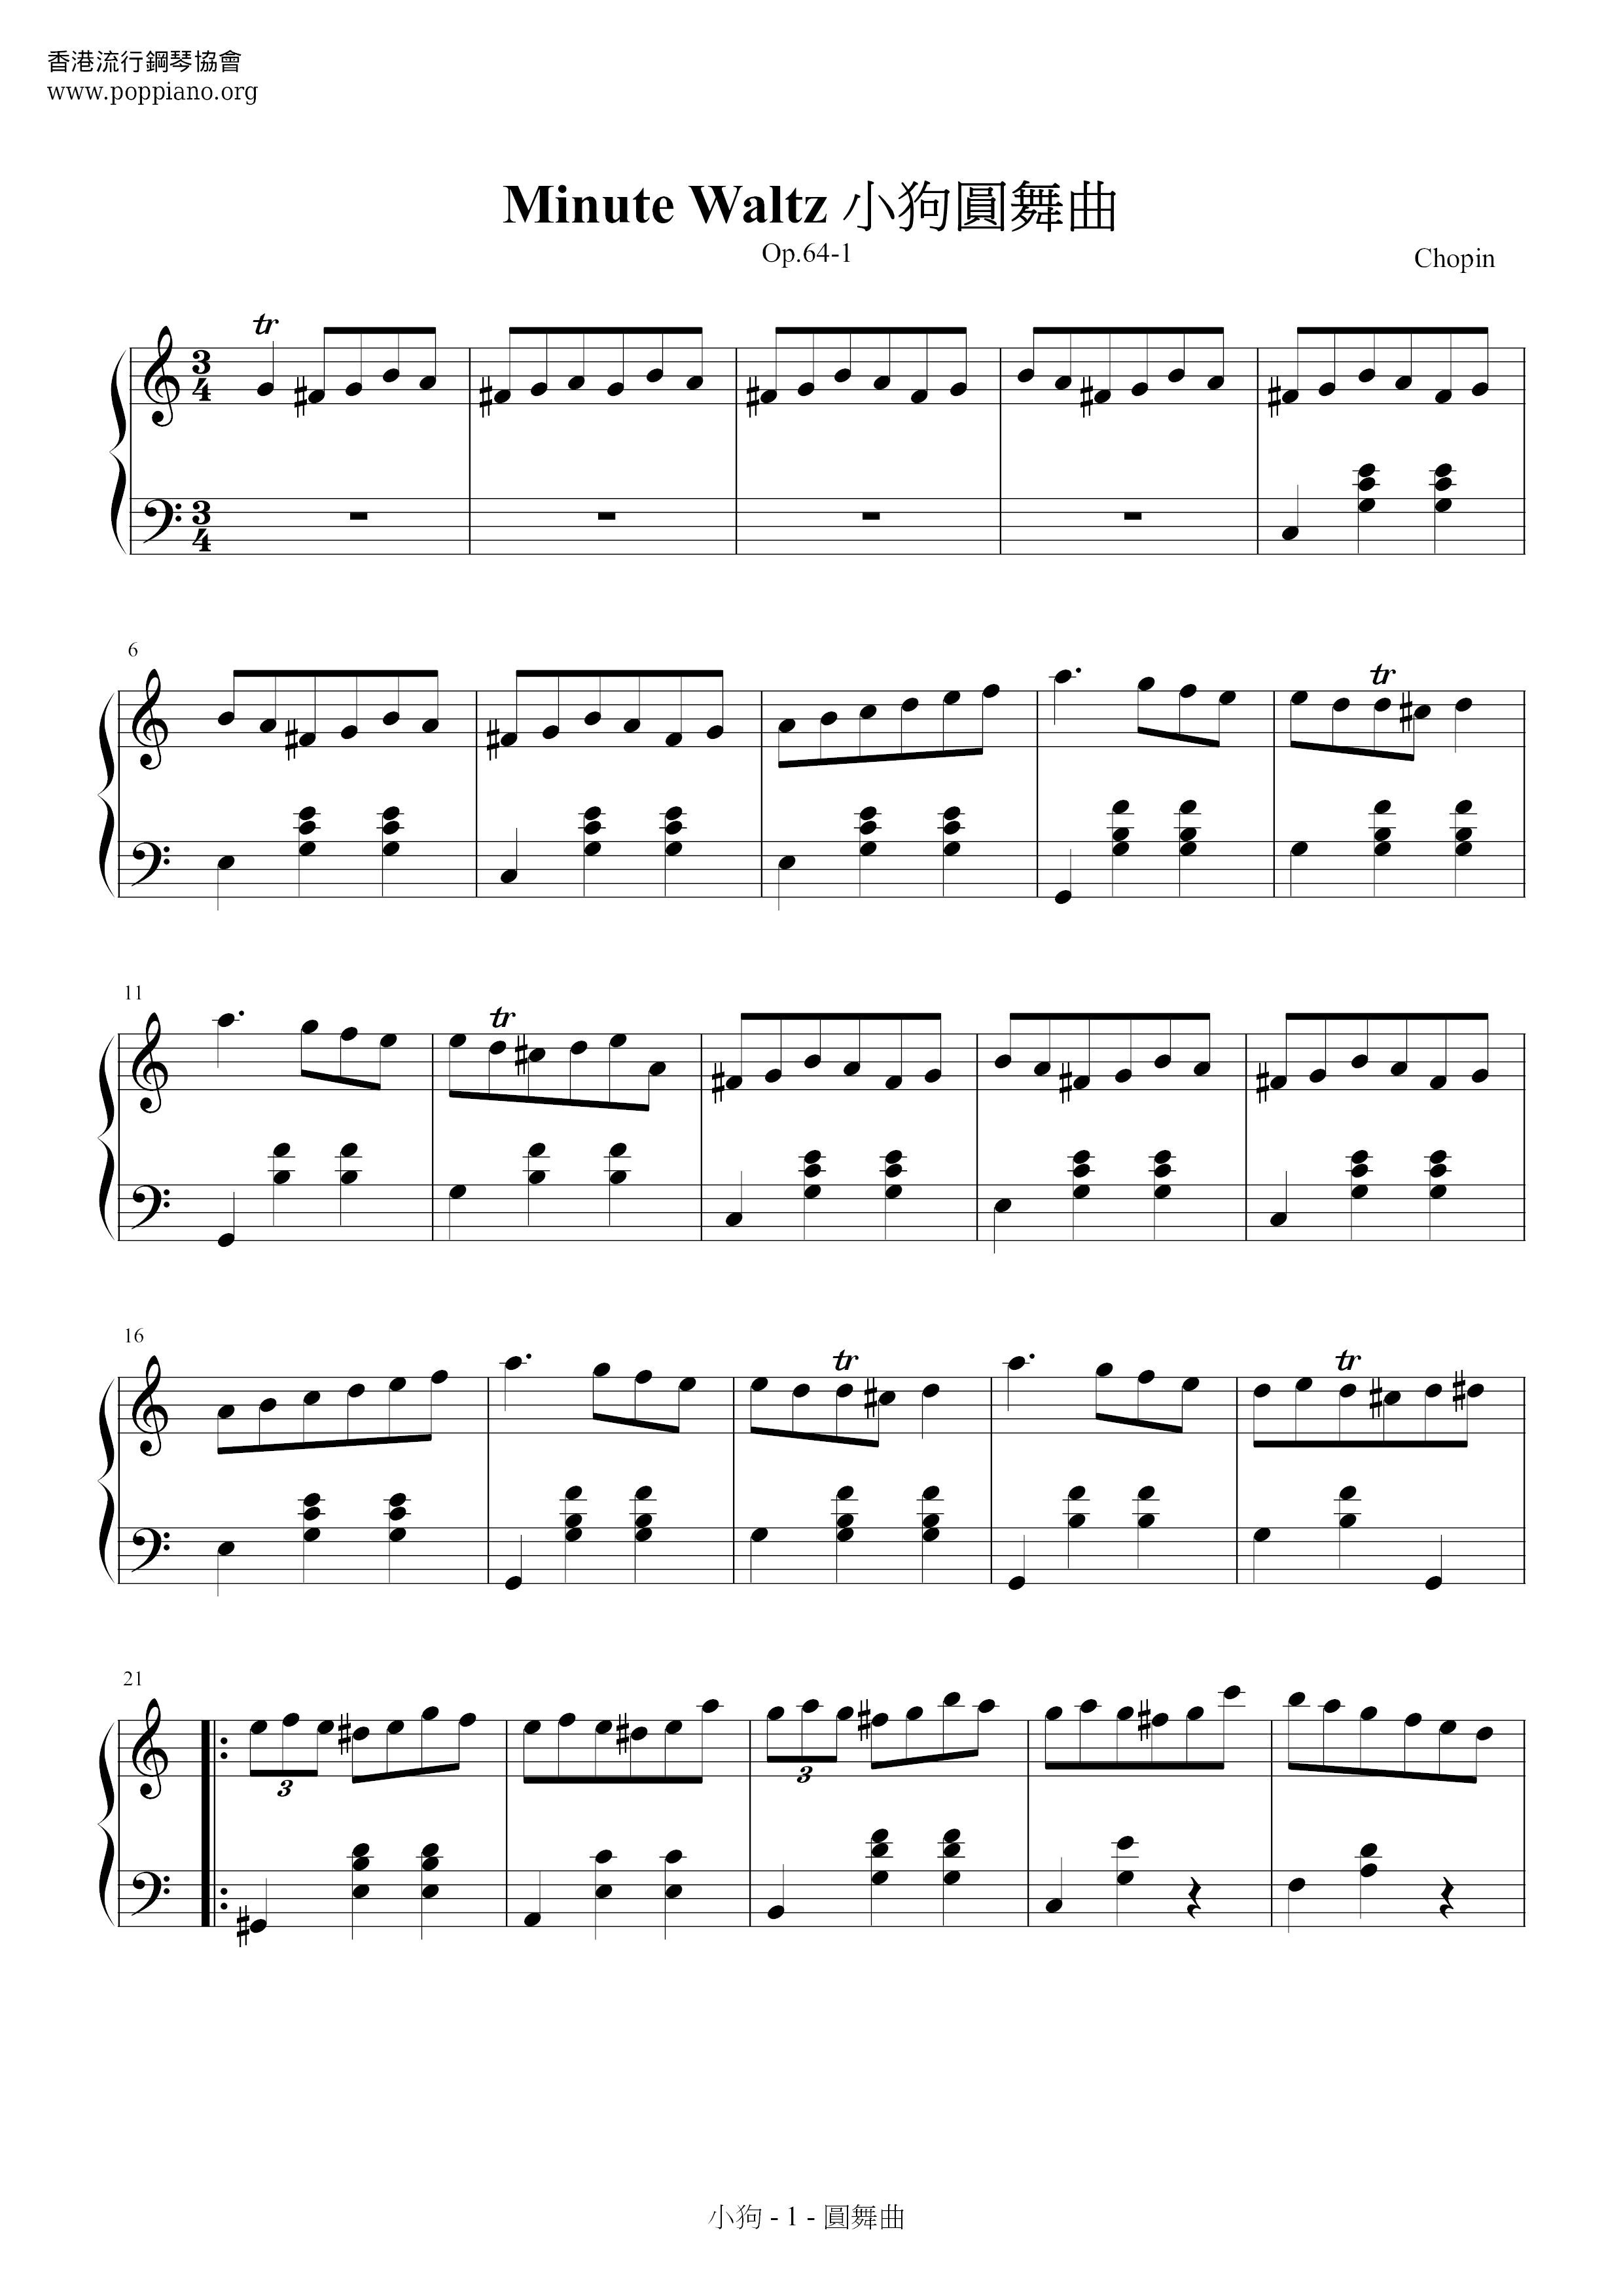 Waltz Op. 64, No. 1 Minute Waltz (小狗圓舞曲)ピアノ譜